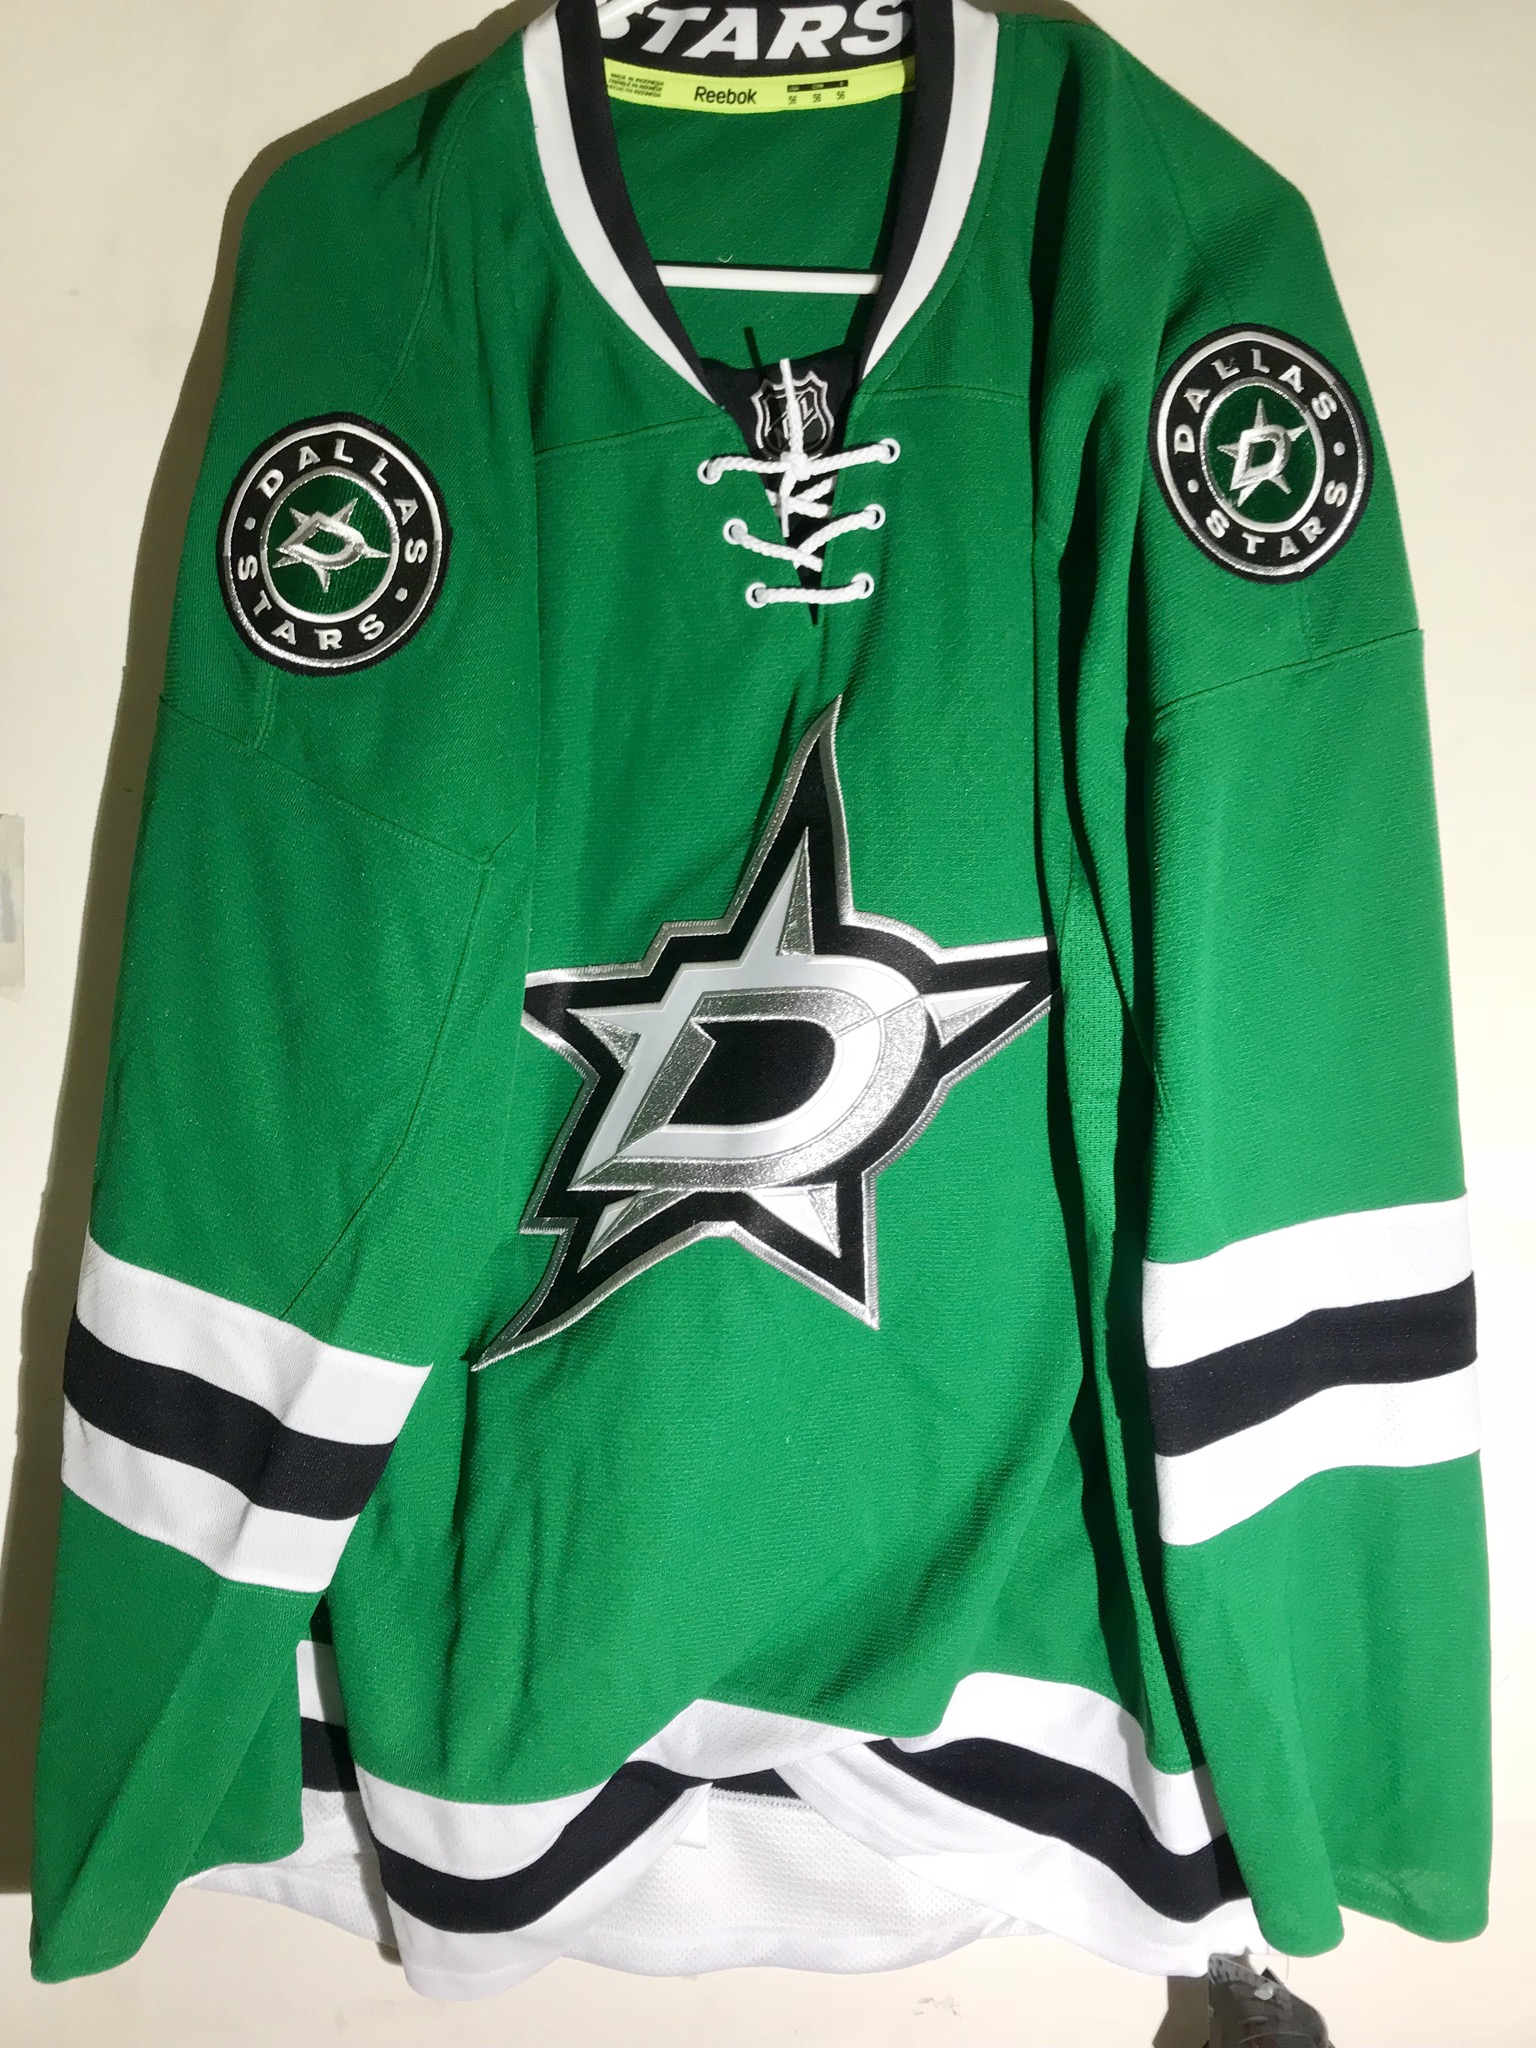 NHL Jersey Dallas Stars Team Green sz 